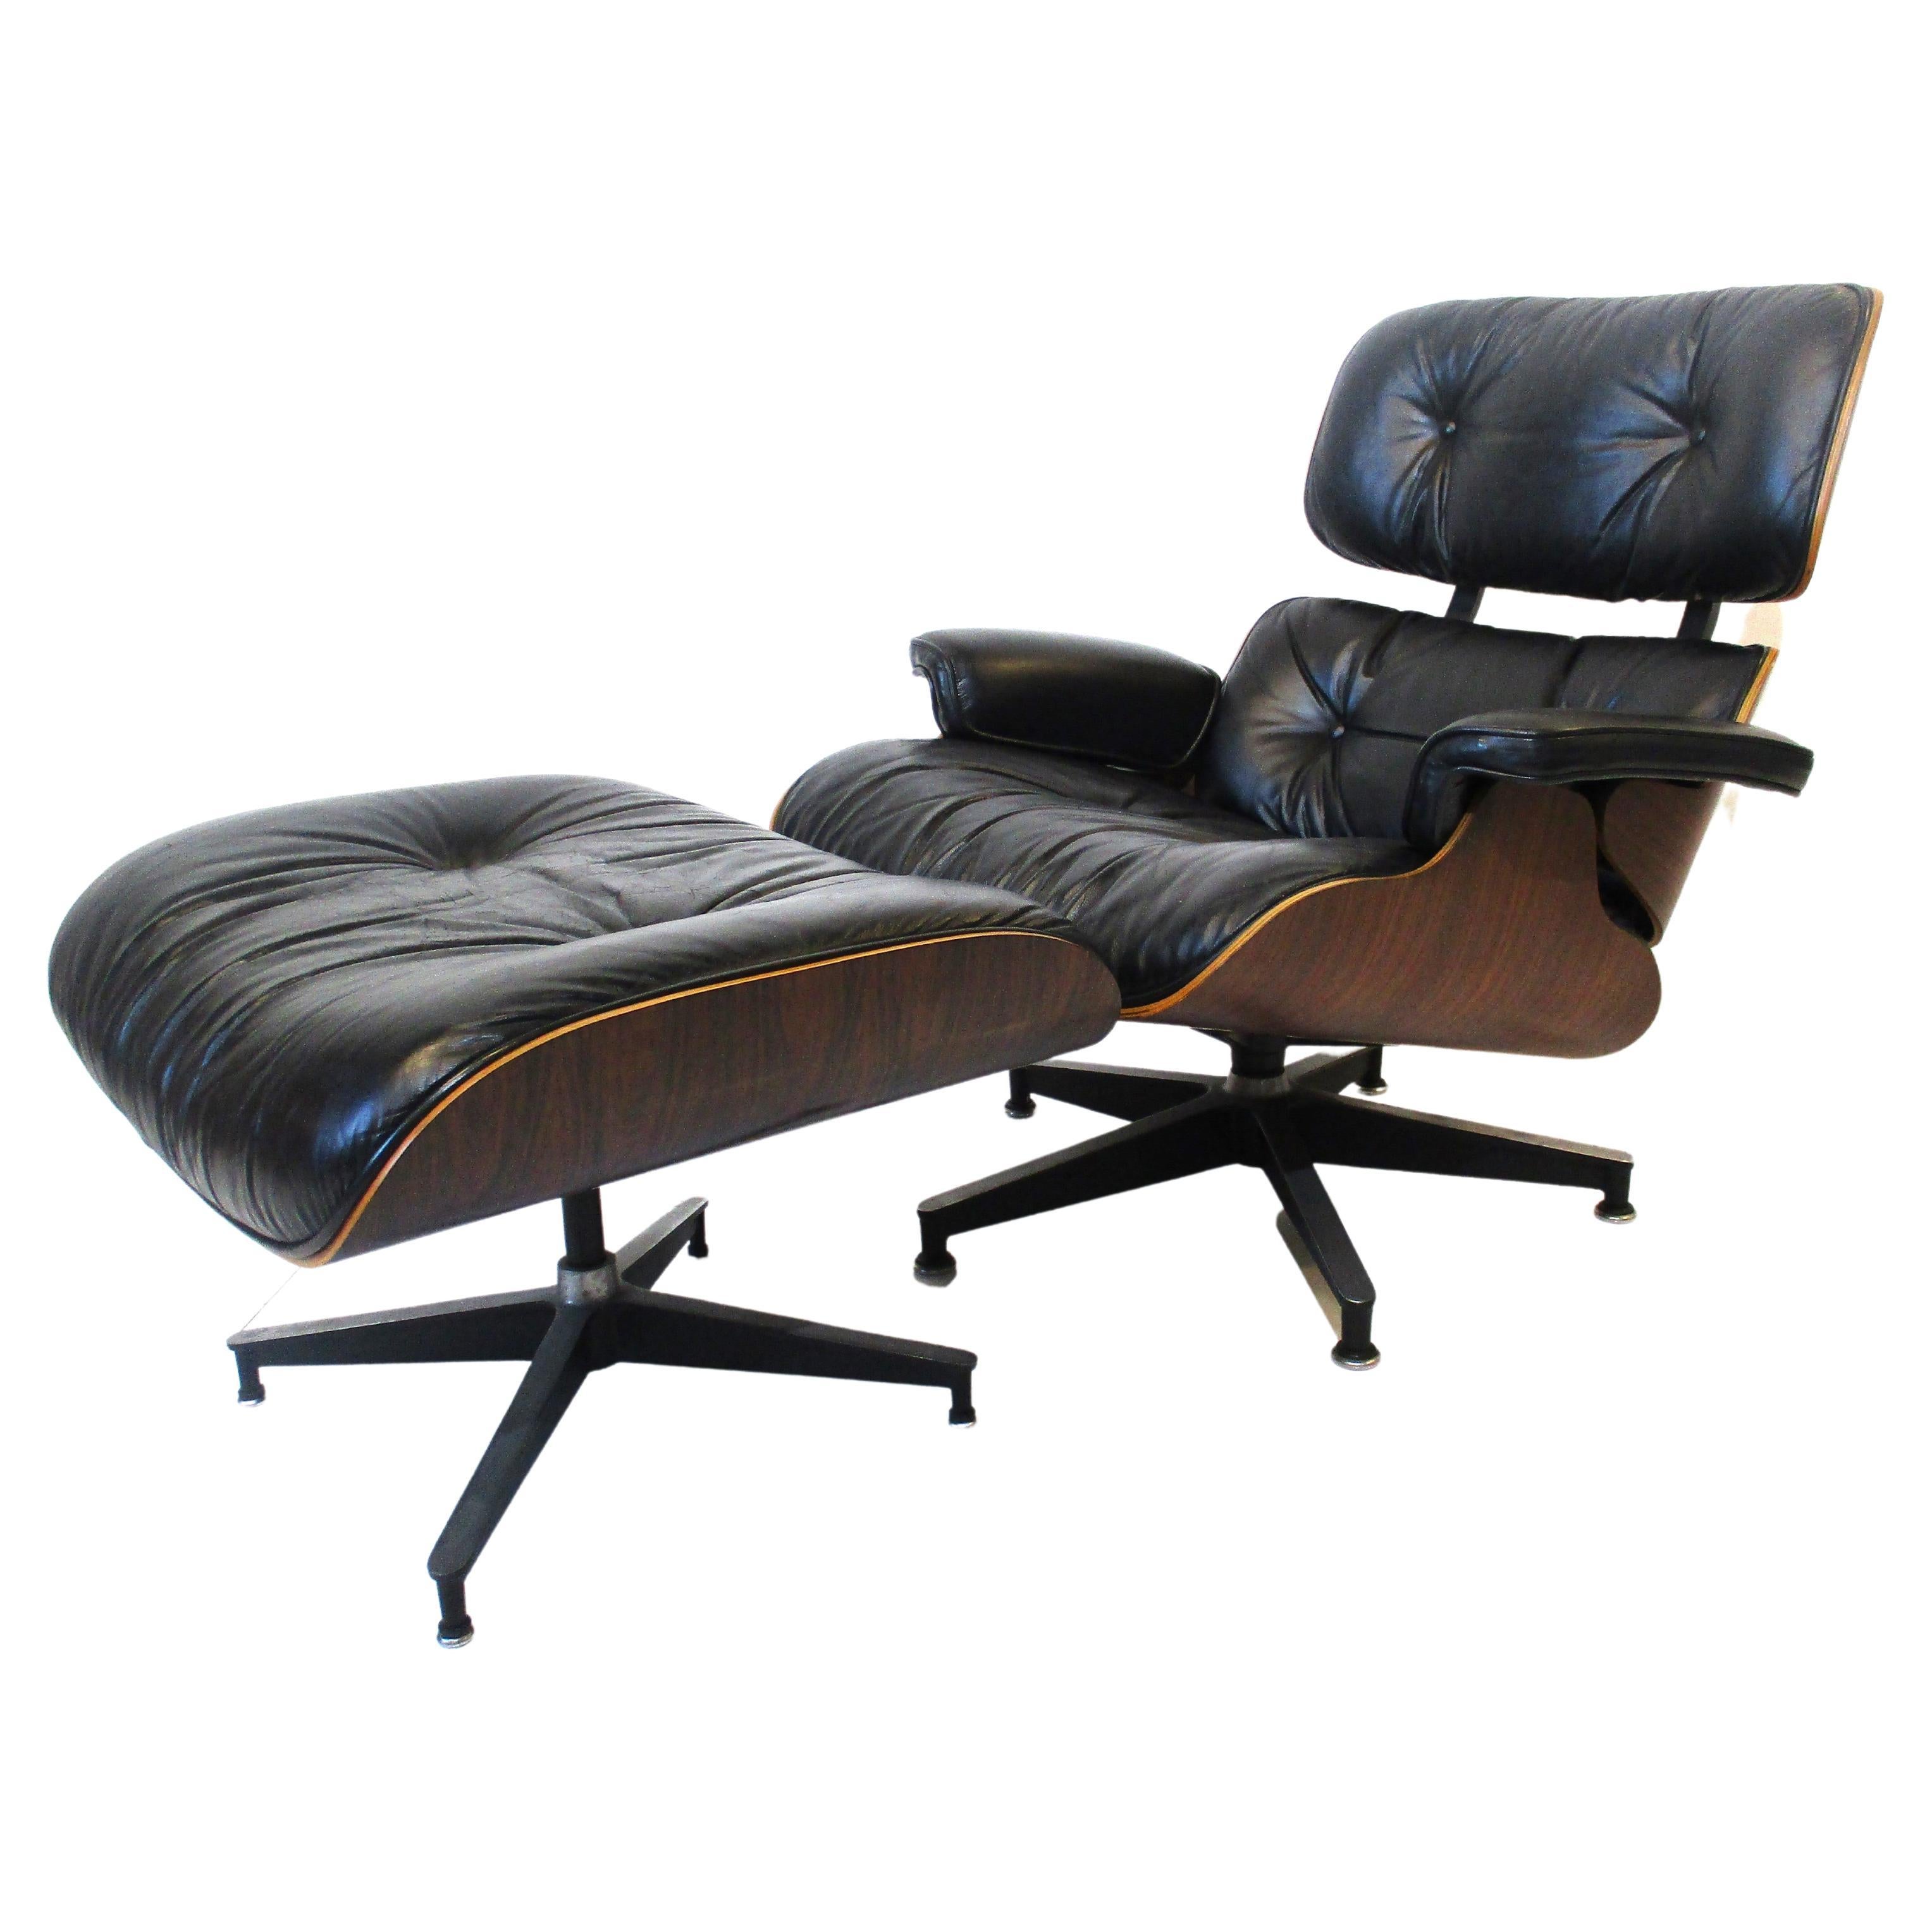 Un fauteuil Eames 670 et un ottoman 671 en palissandre brésilien foncé, recouvert d'un cuir noir doux et lisse. La chaise repose sur une base en étoile pivotante en fonte d'aluminium avec des coussinets et le pouf est non pivotant sur sa base en